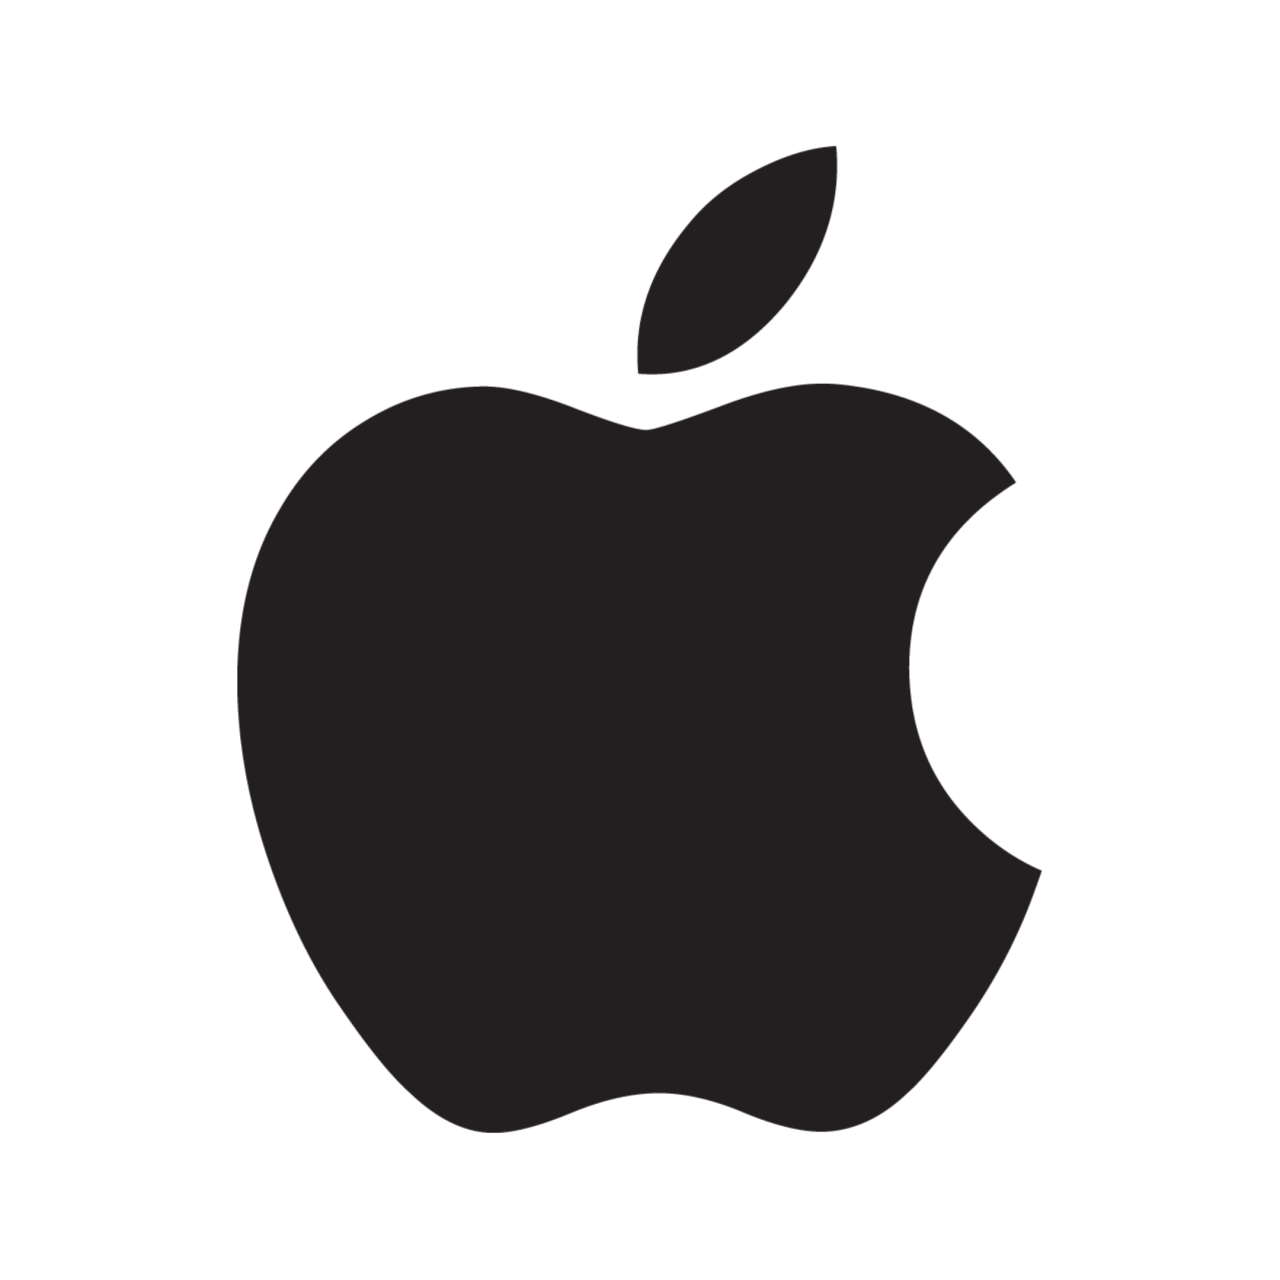 Models Logo Apple Desktop Free Transparent Image HQ PNG Image